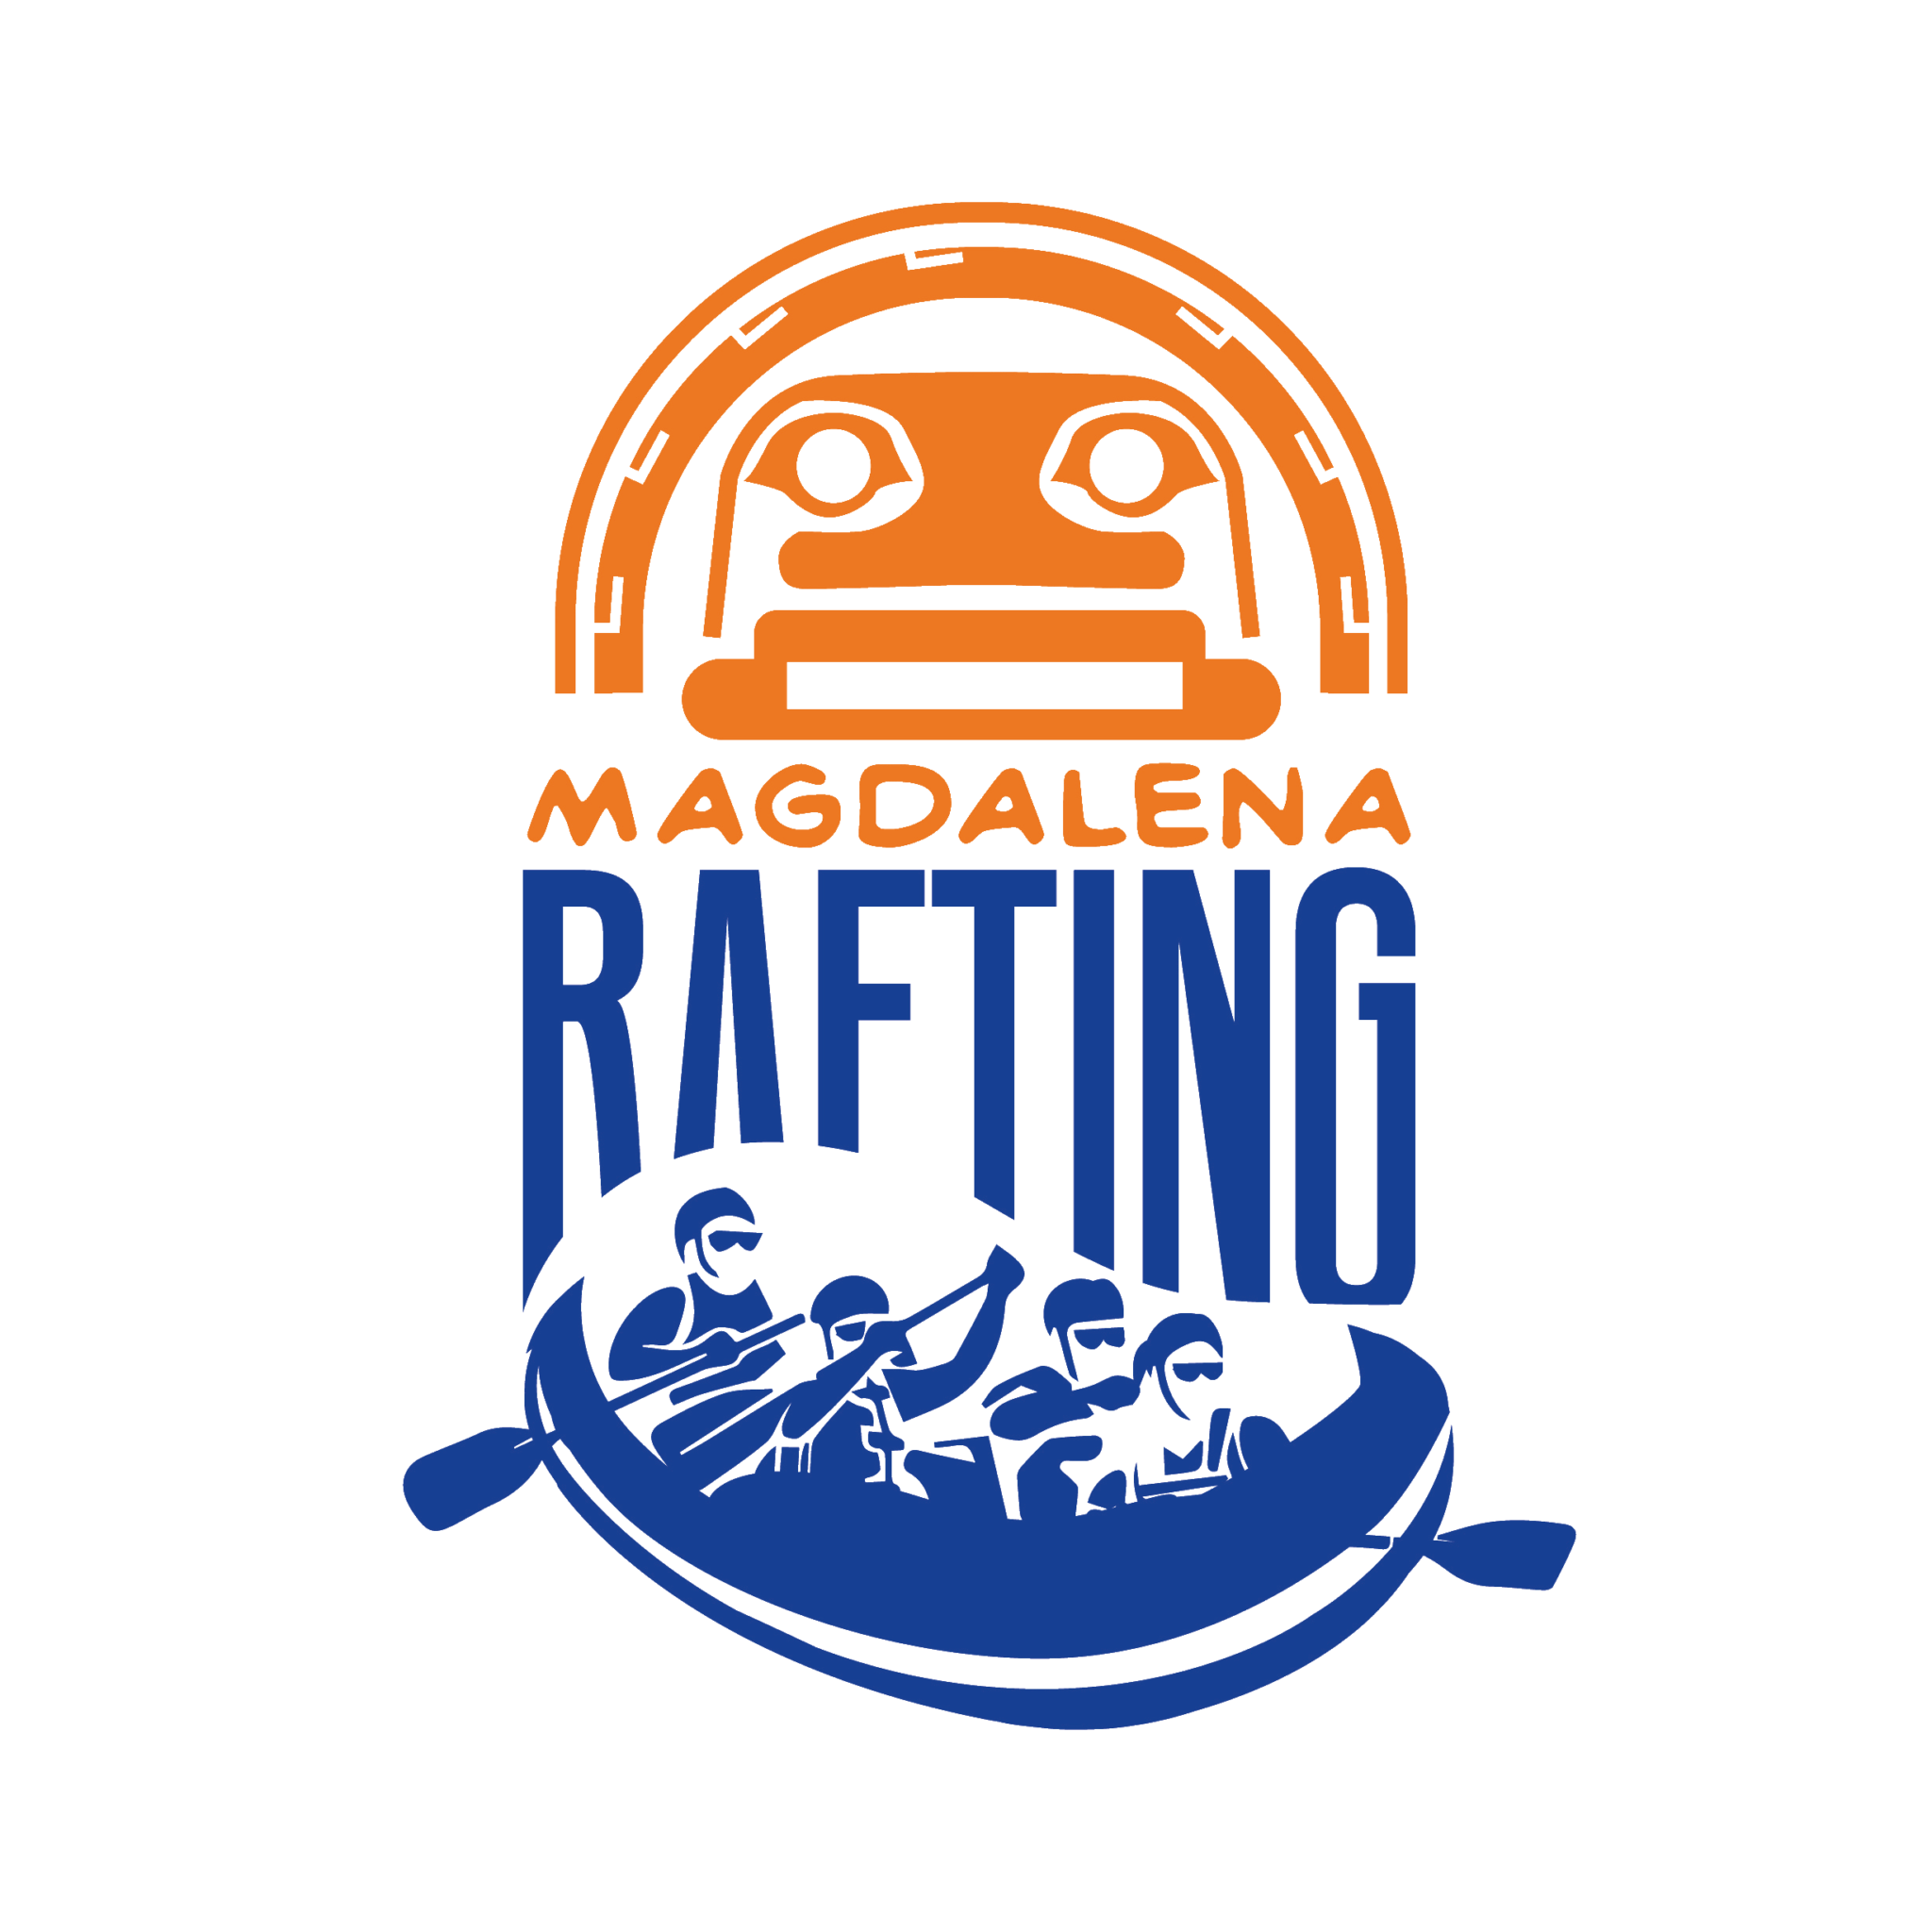 Magdalena Rafting